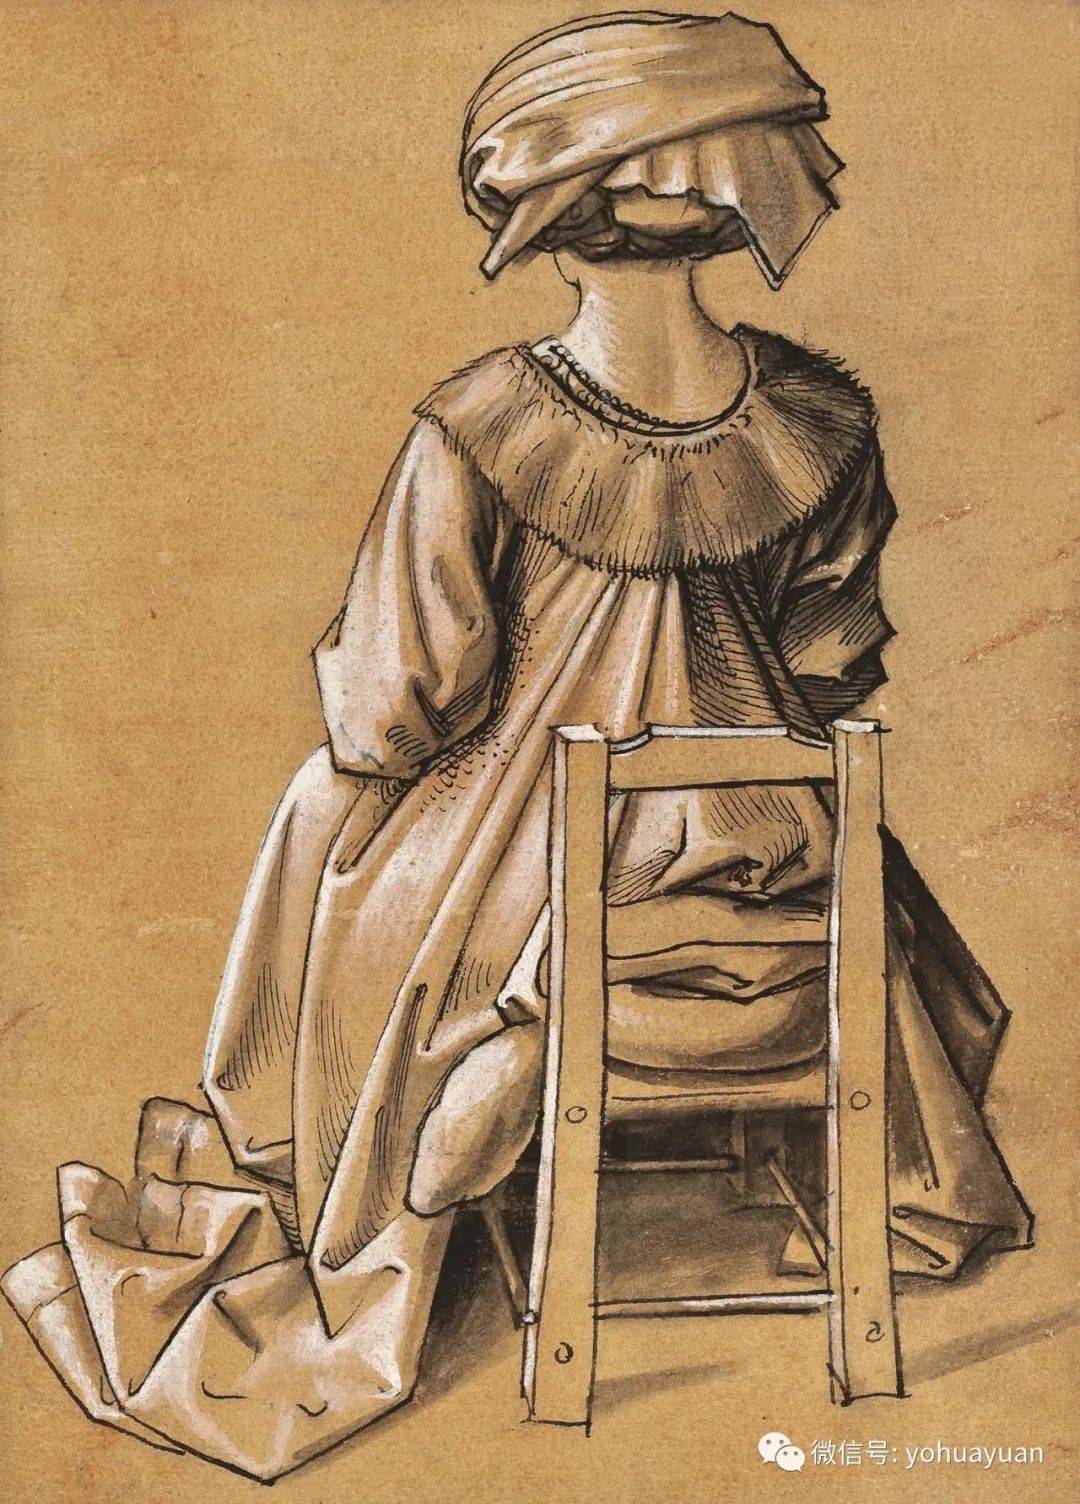 油画大师——荷尔拜因绘画欣赏(185张高清图)